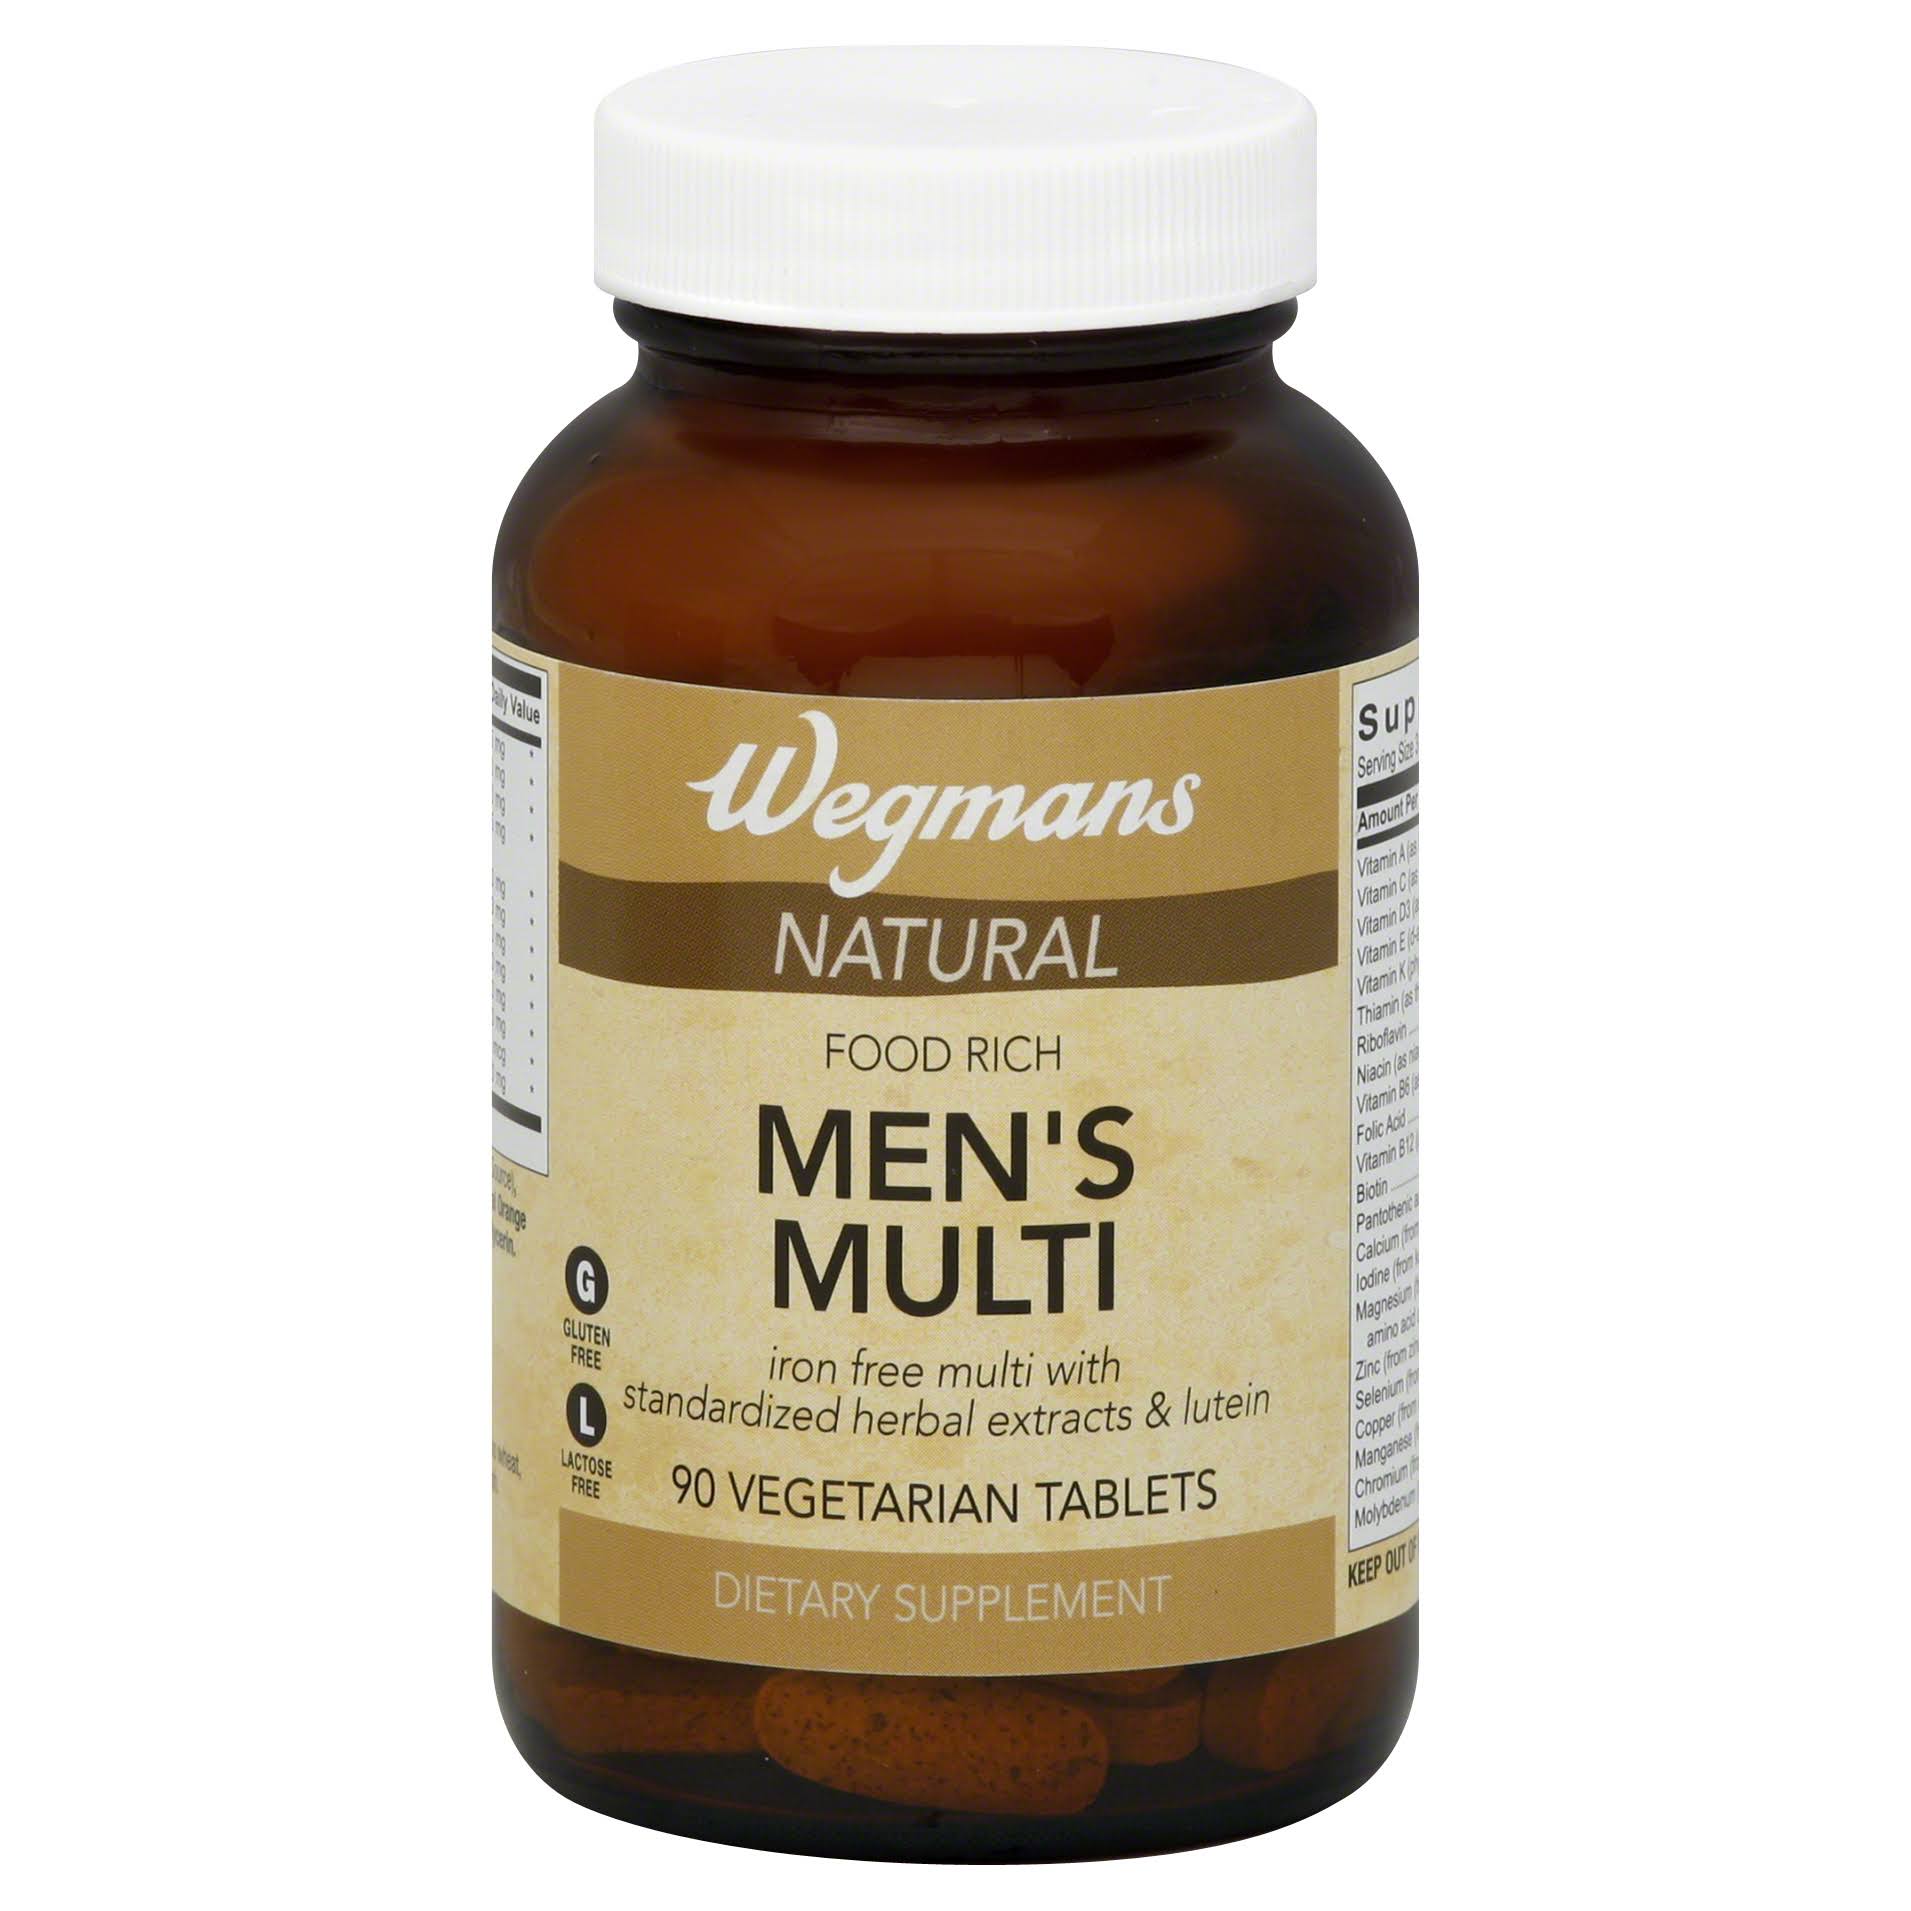 Wegmans Men's Multi, Natural, Vegetarian Tablets - 90 tablets